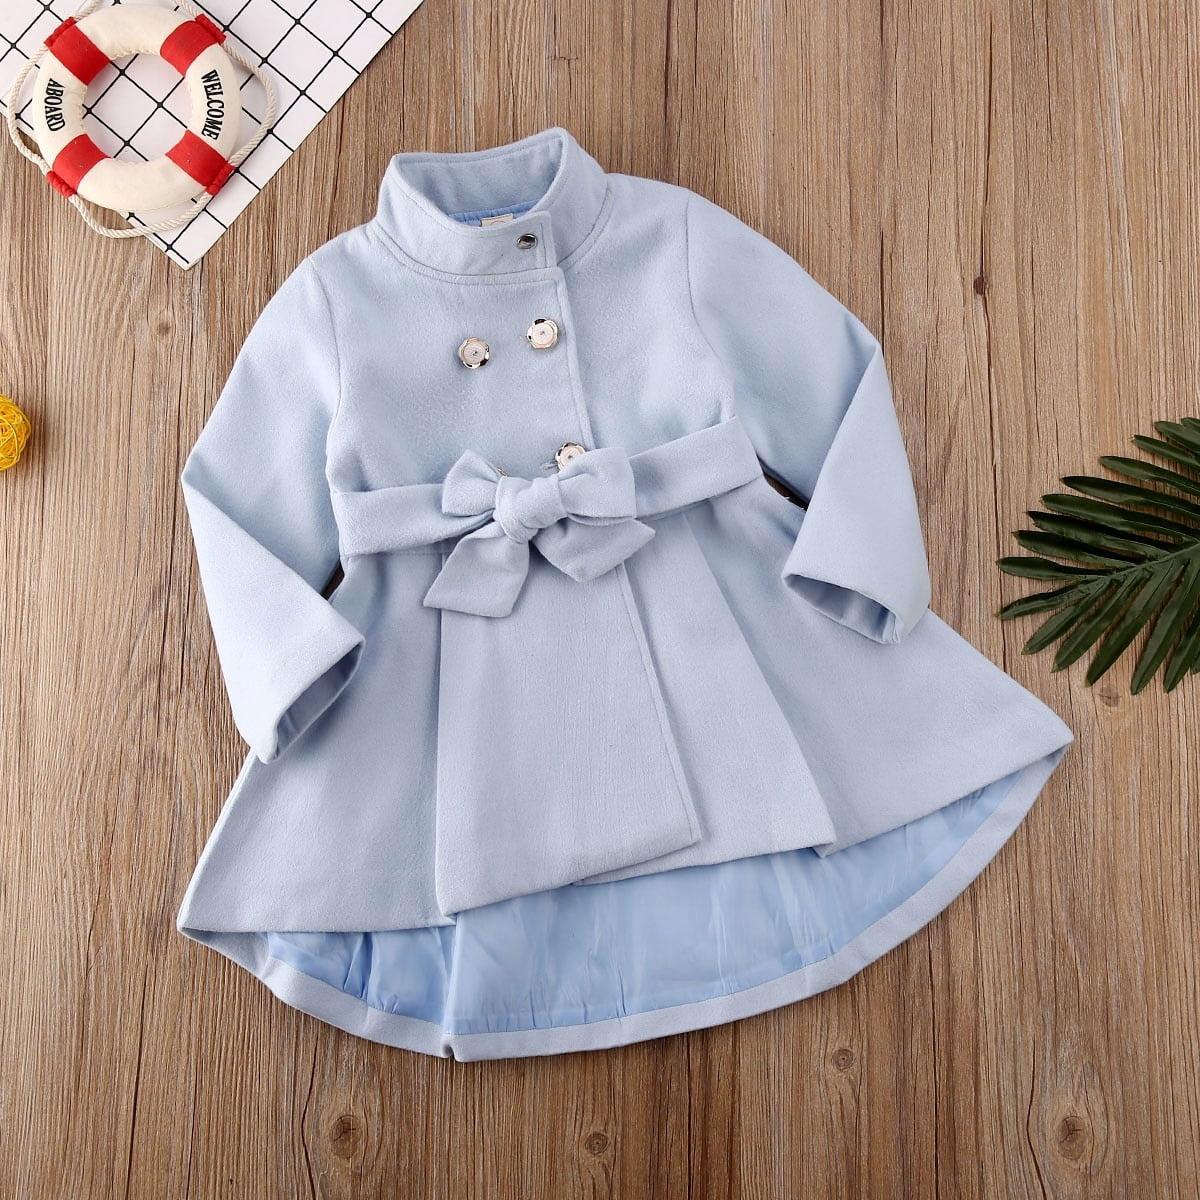 baby winter dress for girl